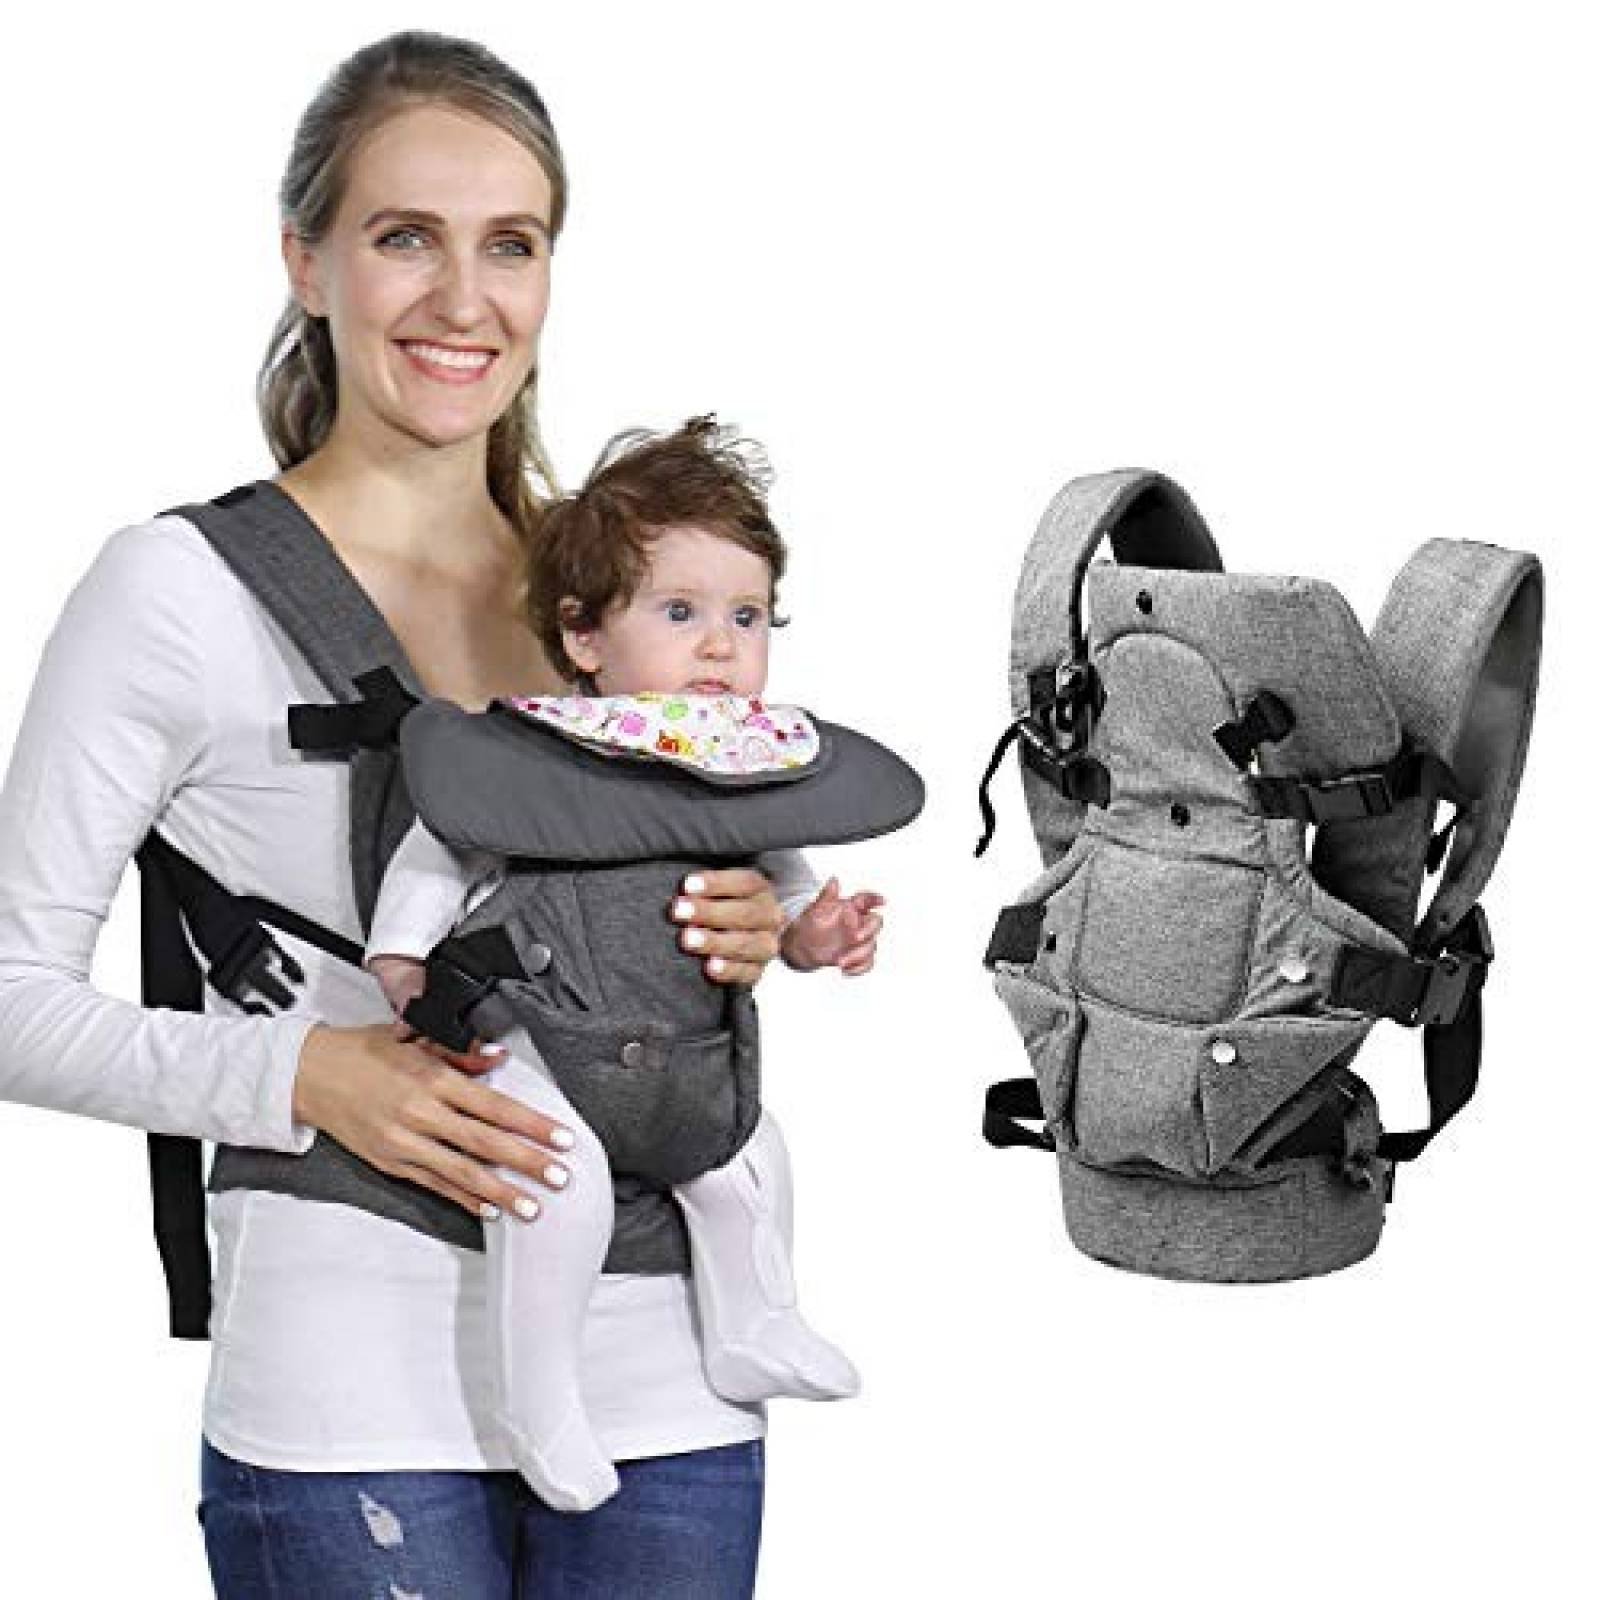 Porta bebé zimo 4 en 1 ergonómico ajustable -Gris